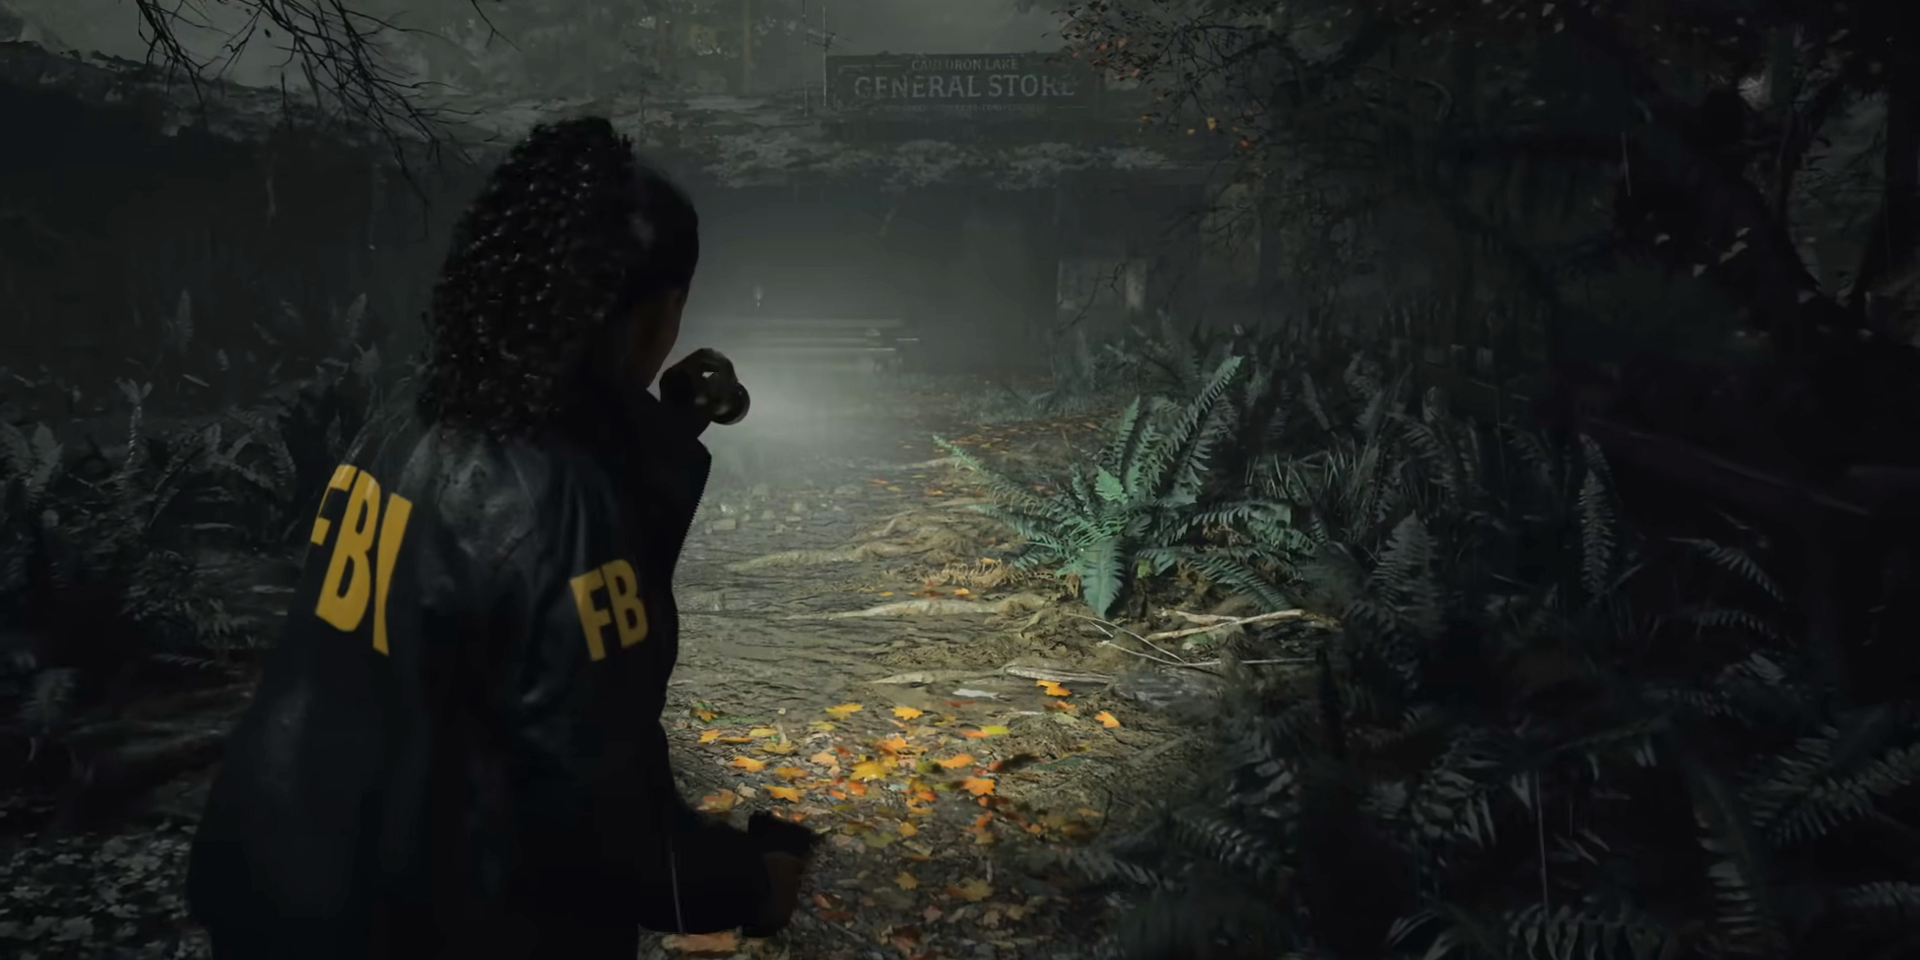 Alan Wake 2  Gameplay Reveal Trailer 